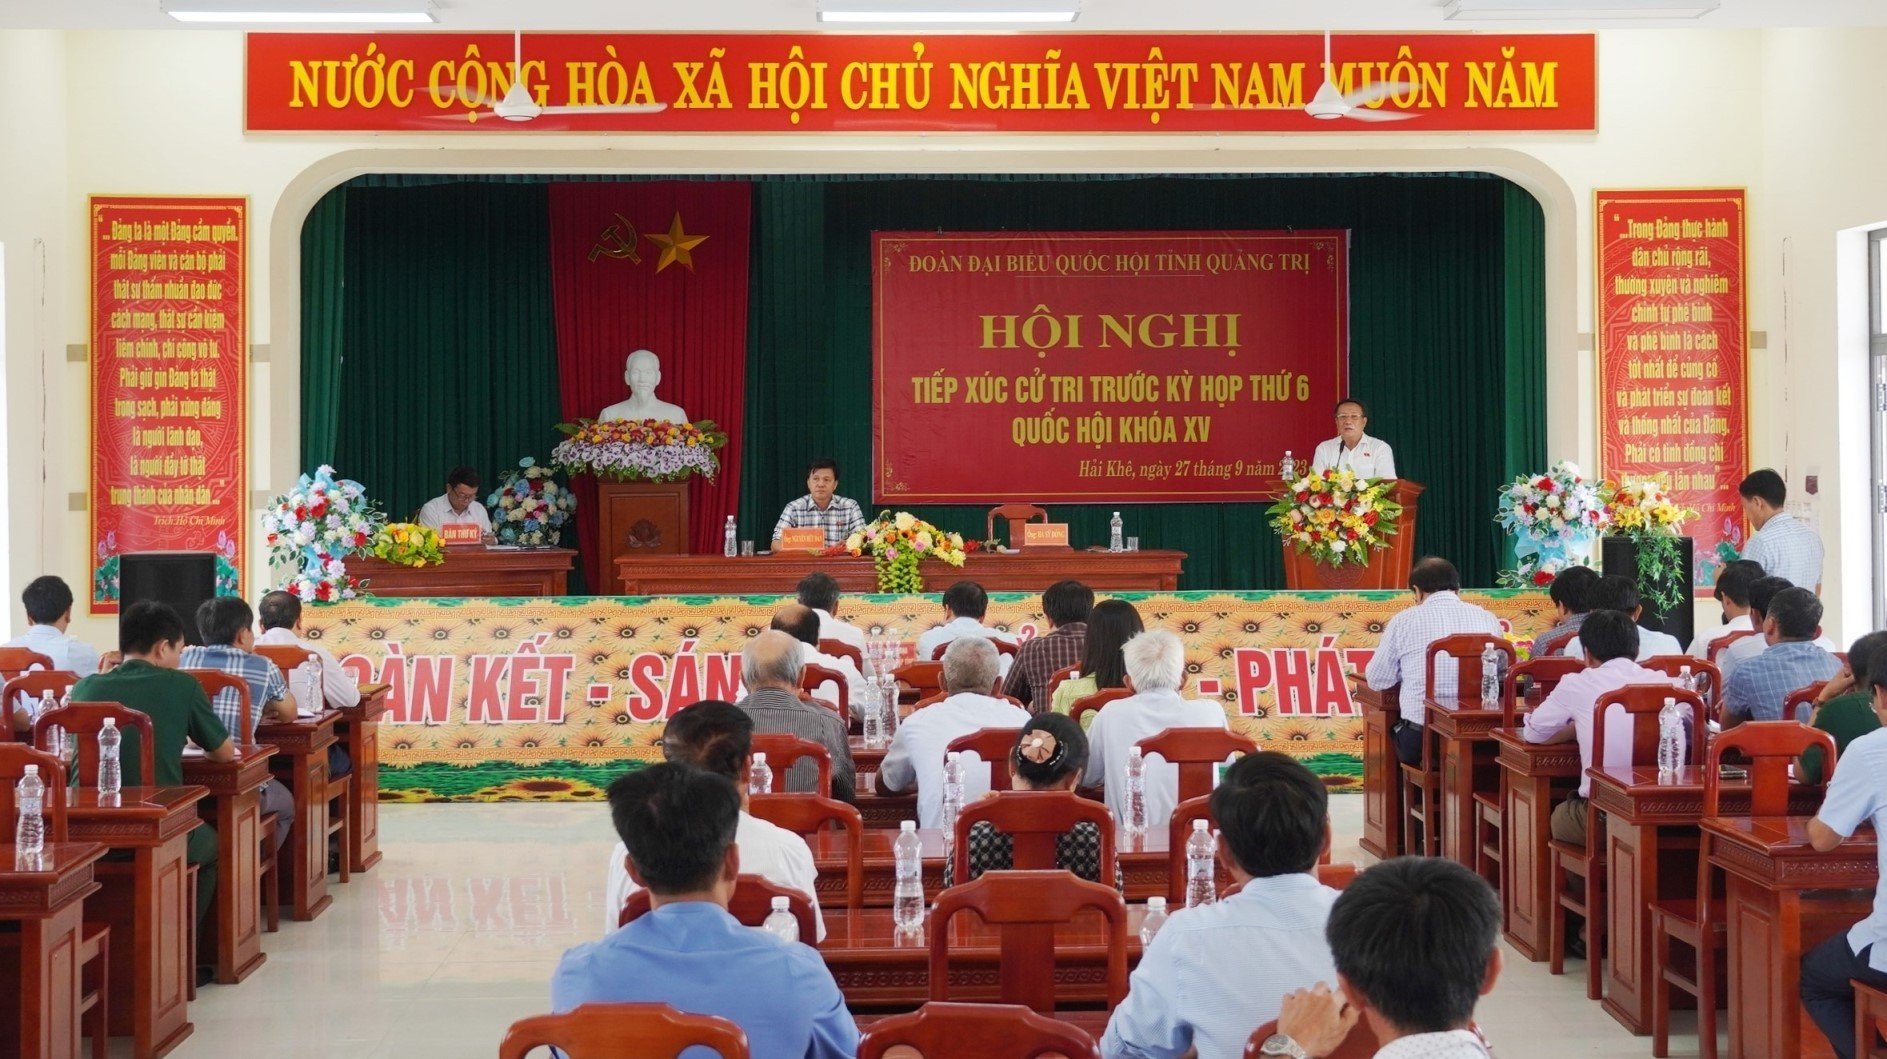 Toàn cảnh Hội nghị Tiếp xúc cử tri tại xã Hải Khê, huyện Hải Lăng